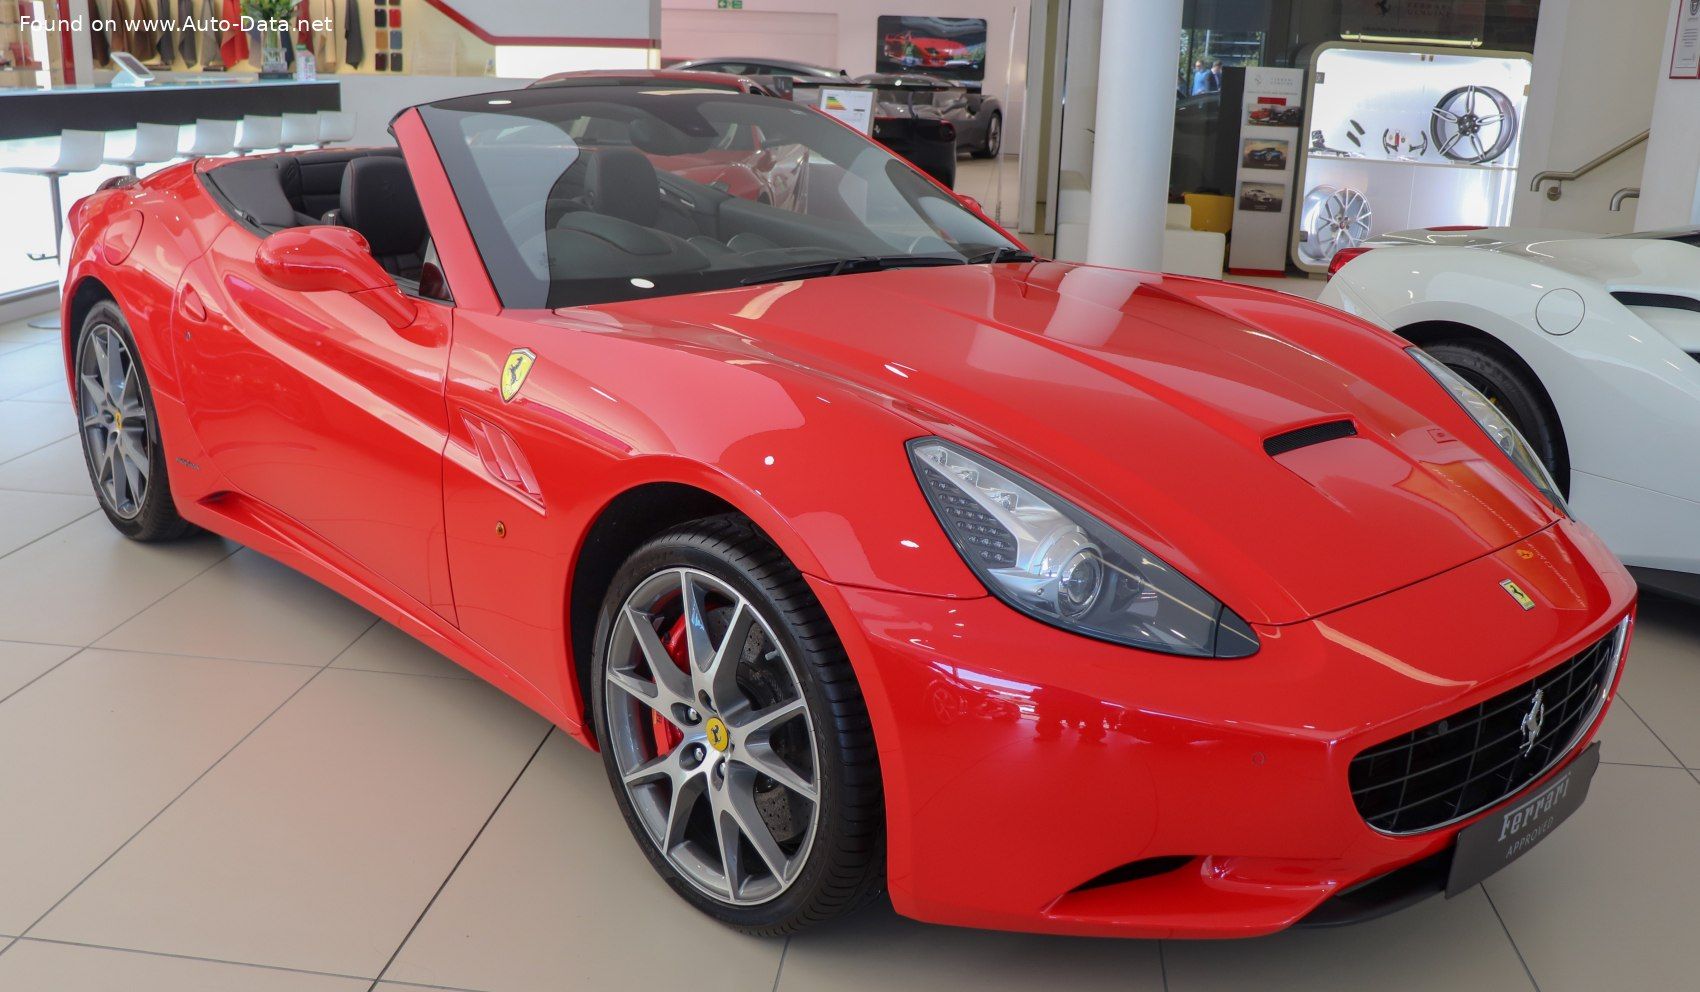 the 2012 Ferrari California in a showroom